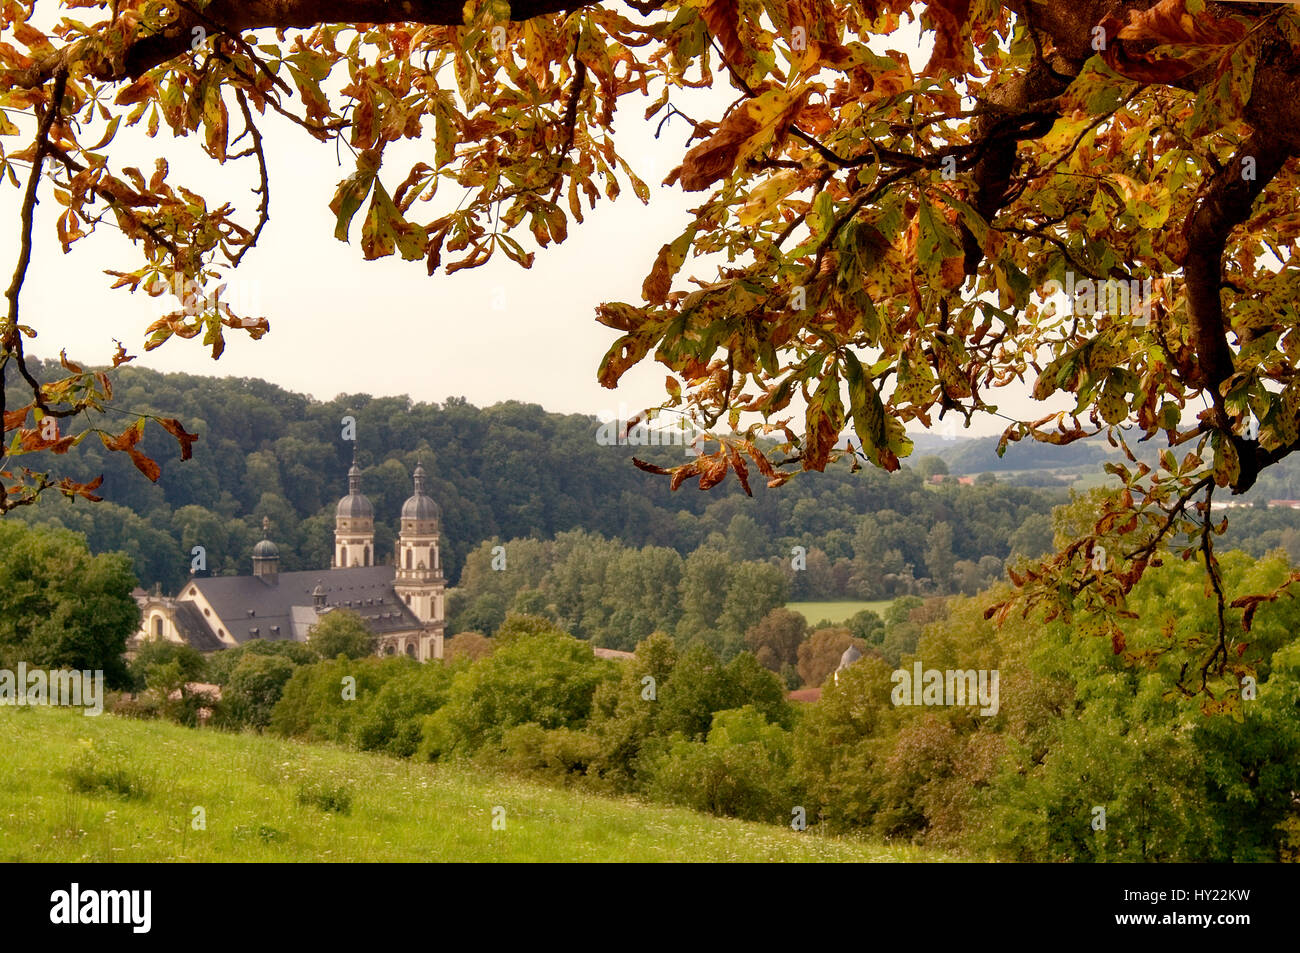 Image de la NTAL Schüller (monastère dans la vallée de la Jagst à l'Etat allemand de Baden-WÃ¼rttemberg. Blick auf das Kloster (Schüller im ntal Jagsttal à Baden Banque D'Images